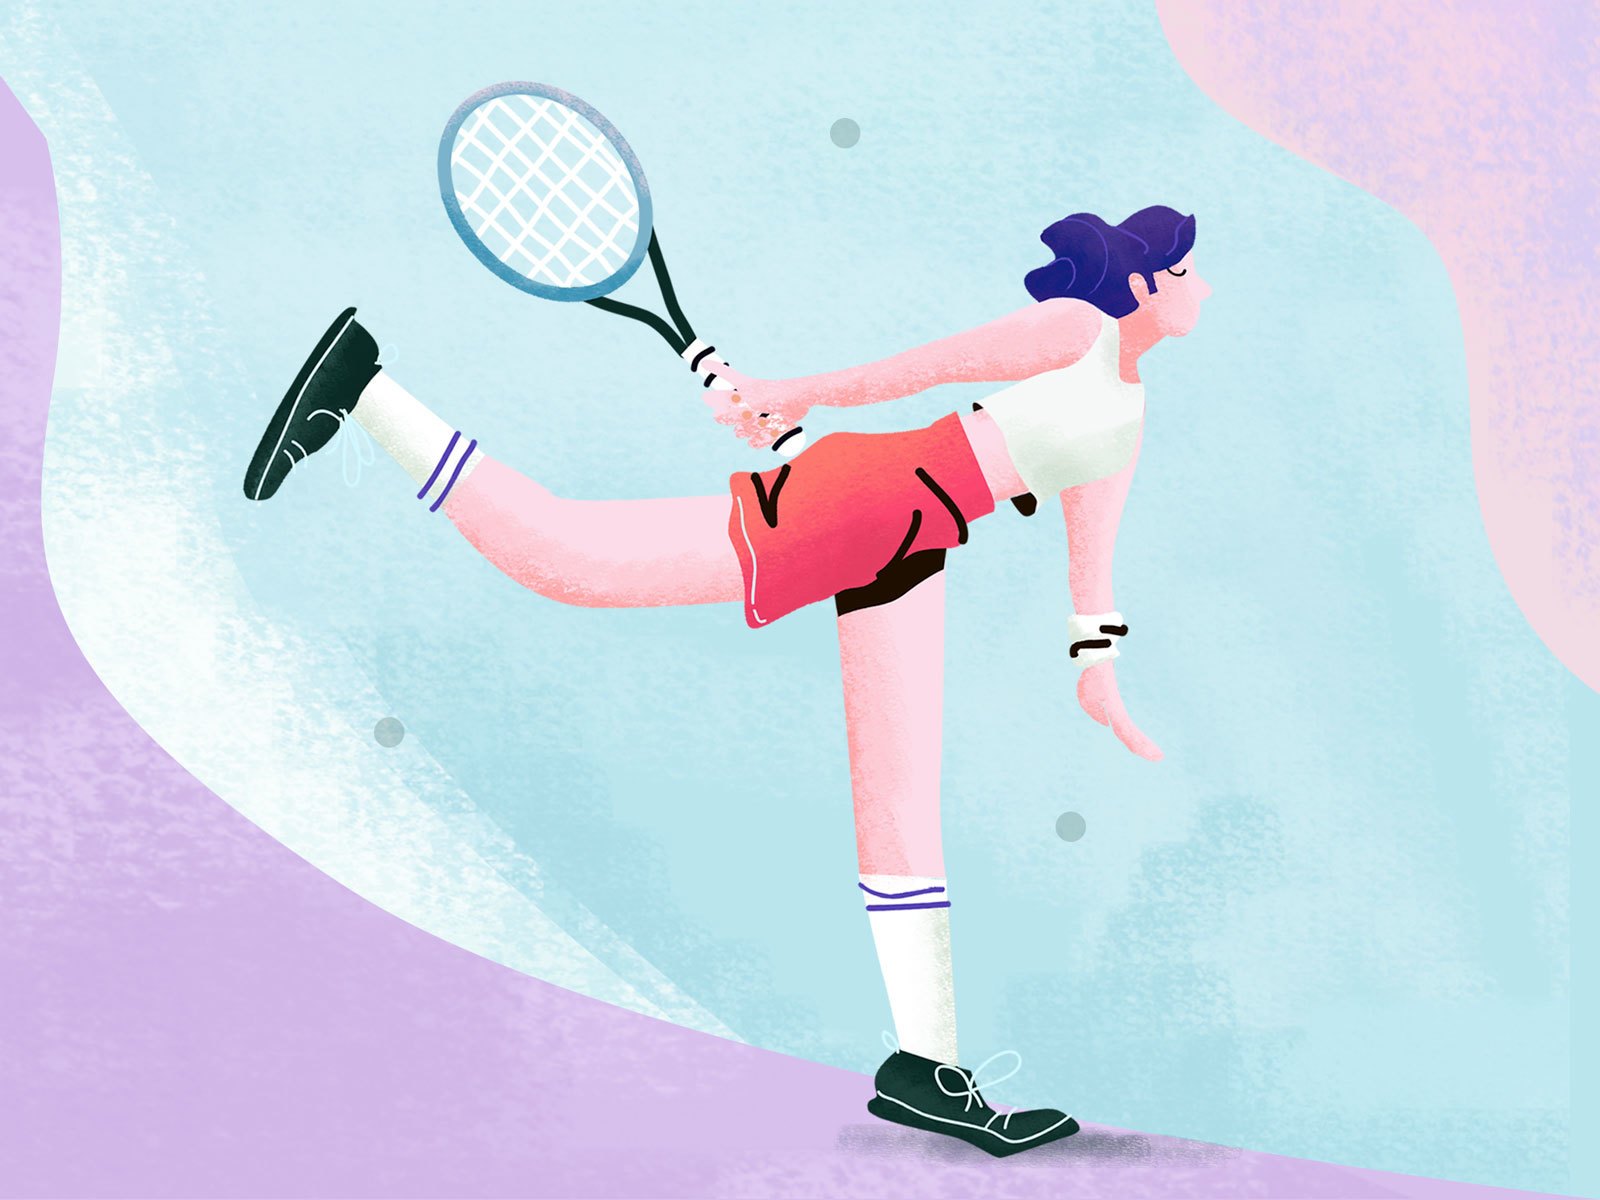 Digital illustration - Badminton